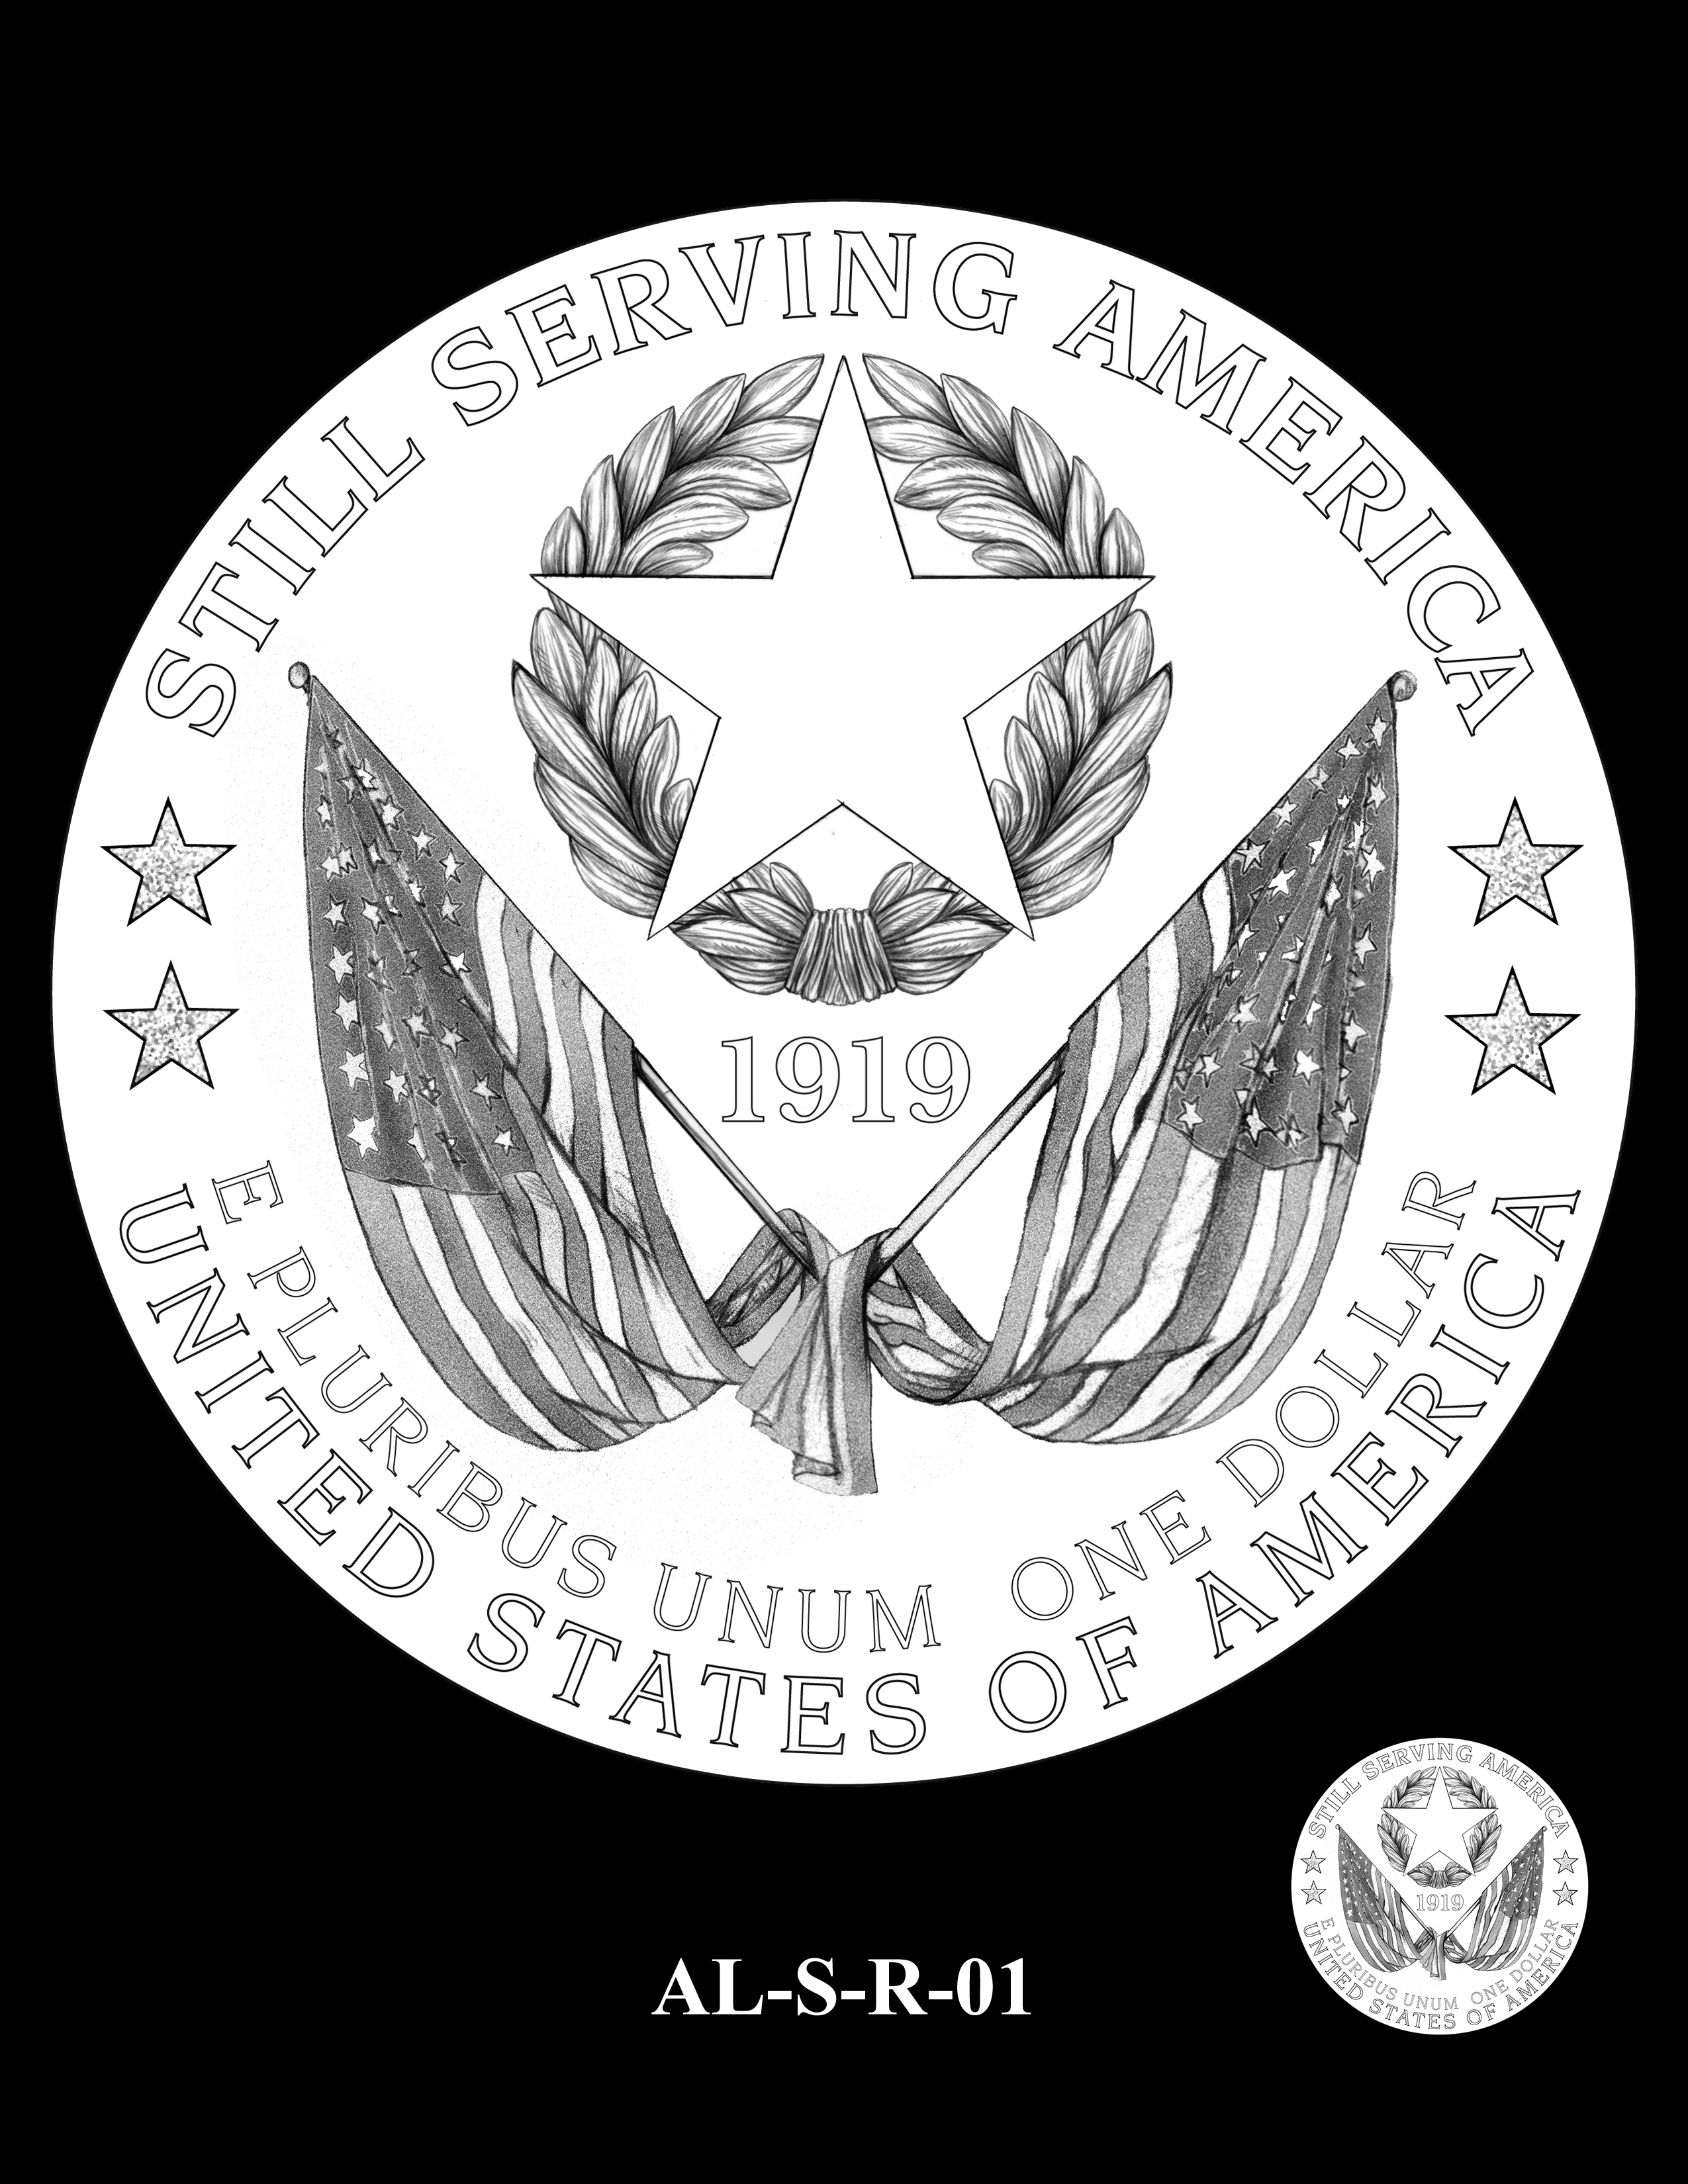 AL-S-R-01 -- 2019 American Legion 100th Anniversary Commemorative Coin Program - Silver Reverse